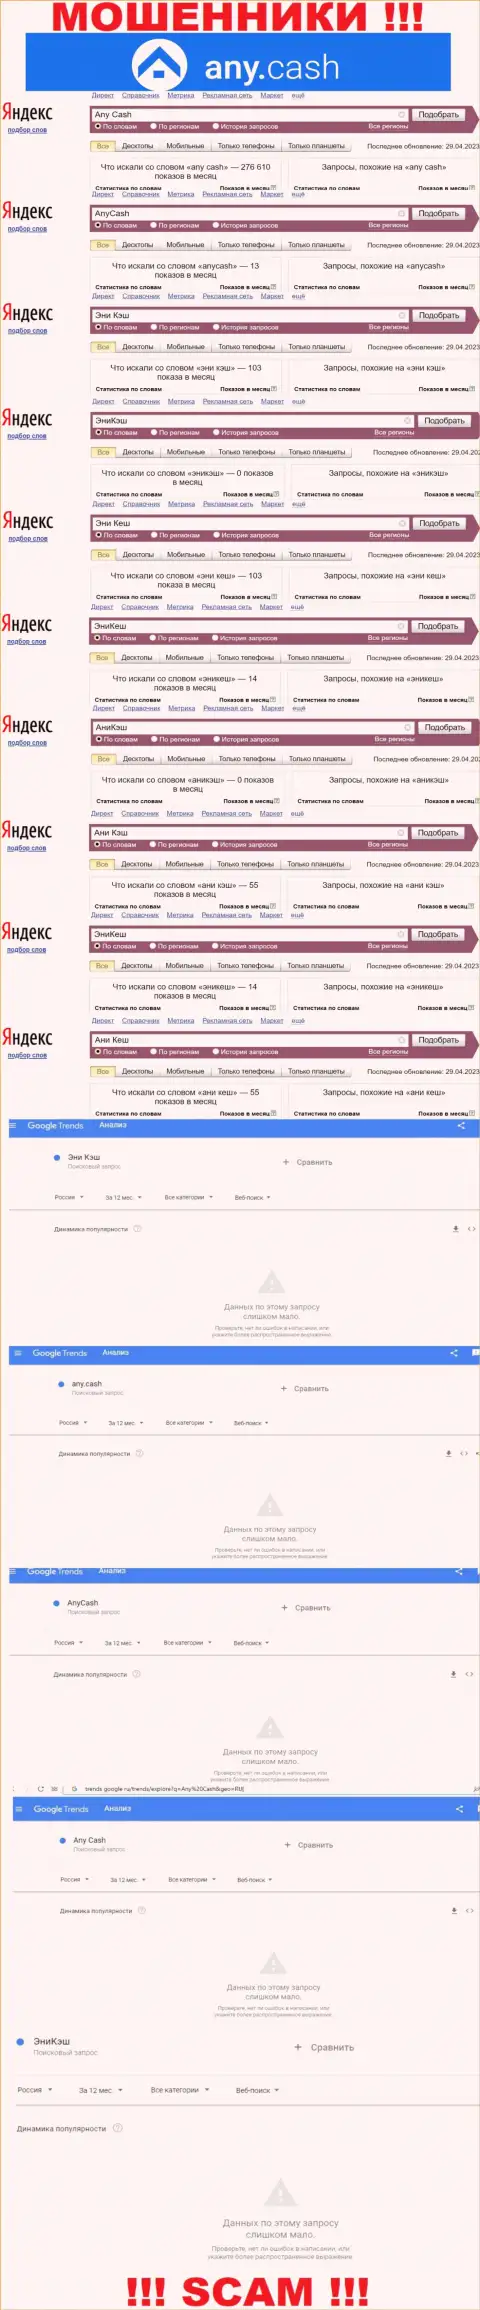 Скриншот результата поисковых запросов по противозаконно действующей организации Any Cash